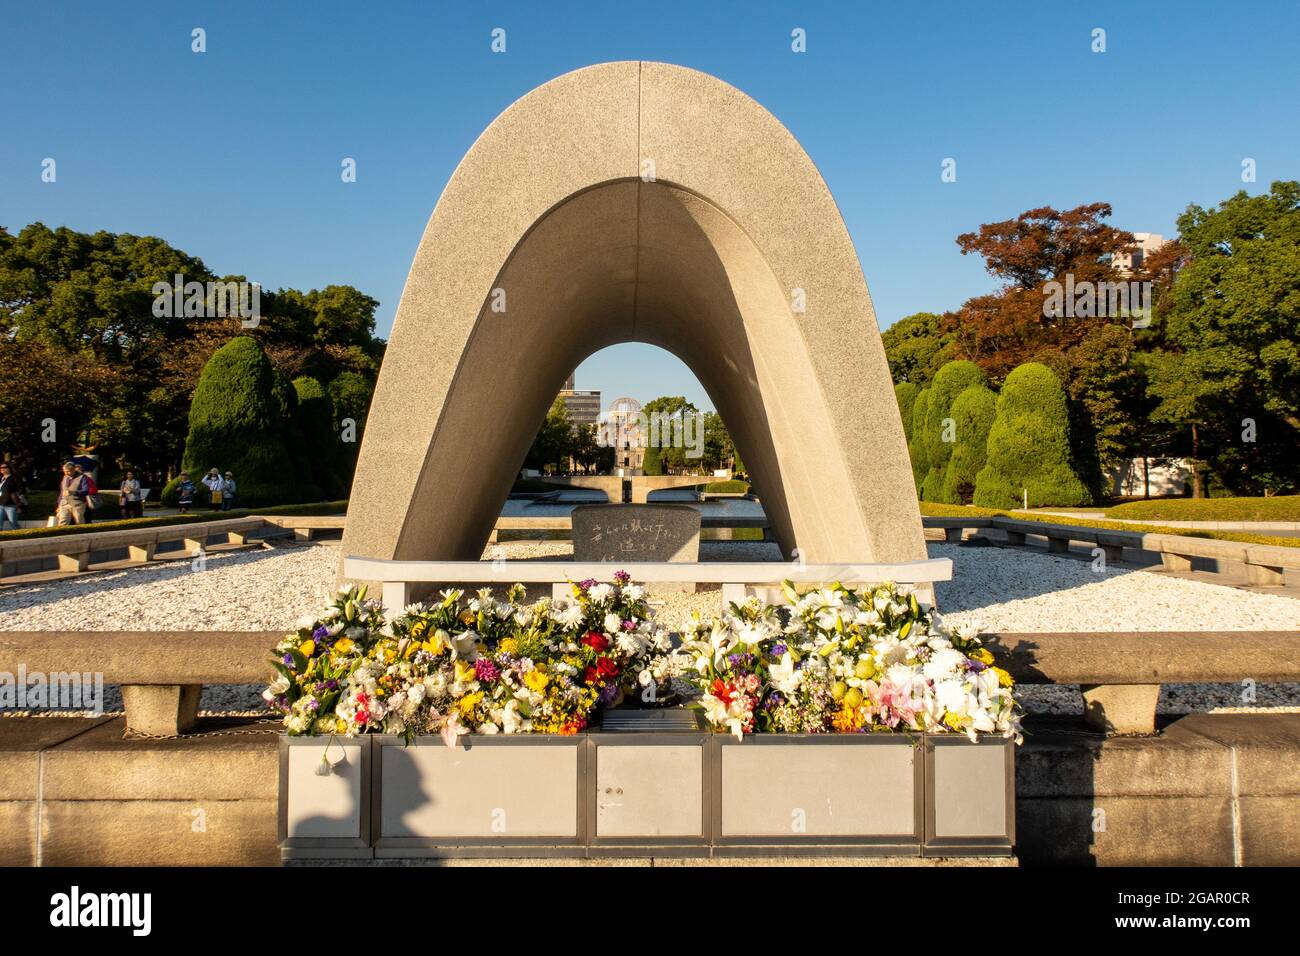 HIROSHIMA, Japon, 31.10.2019. Le Hiroshima victimes Memorial Cenotaph avec vue sur la bombe atomique Dome dans le Parc commémoratif de la paix, Hiroshima, Japon. Banque D'Images